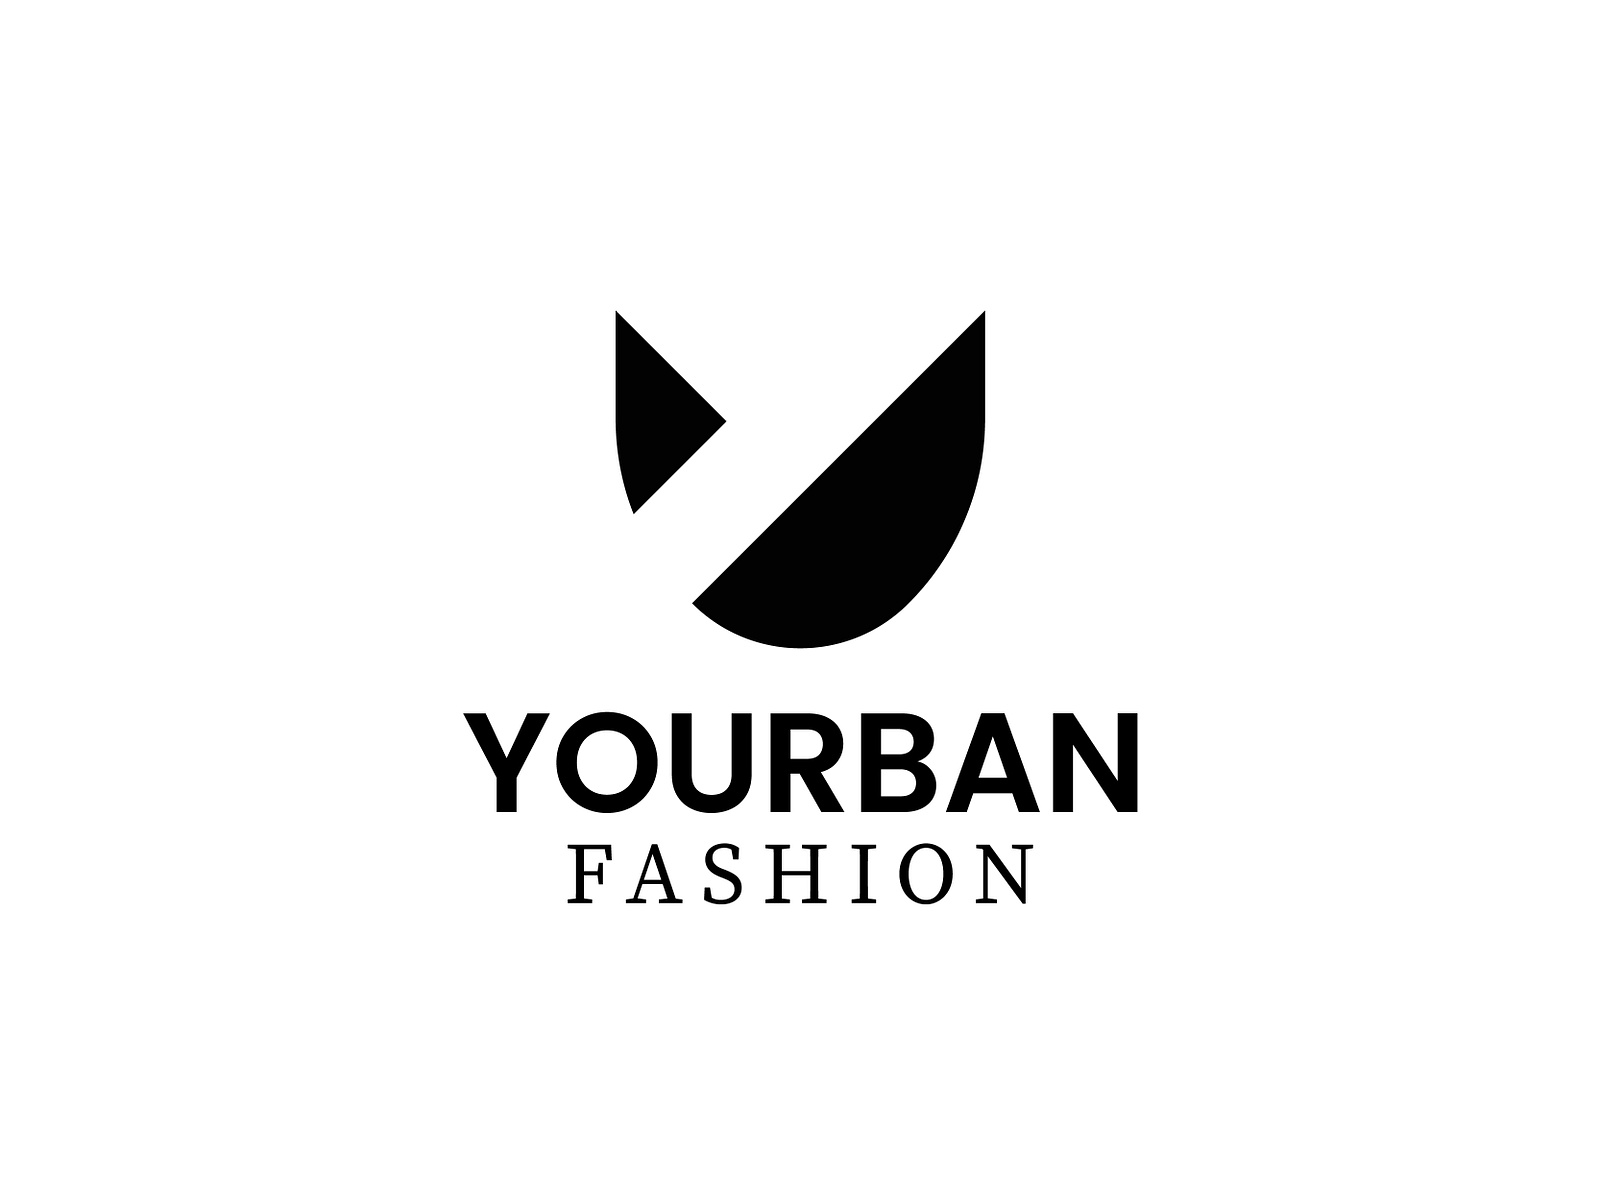 U and Y Letter Urban Fashion Logo - Cloth logo by MD Abdul Alim on Dribbble